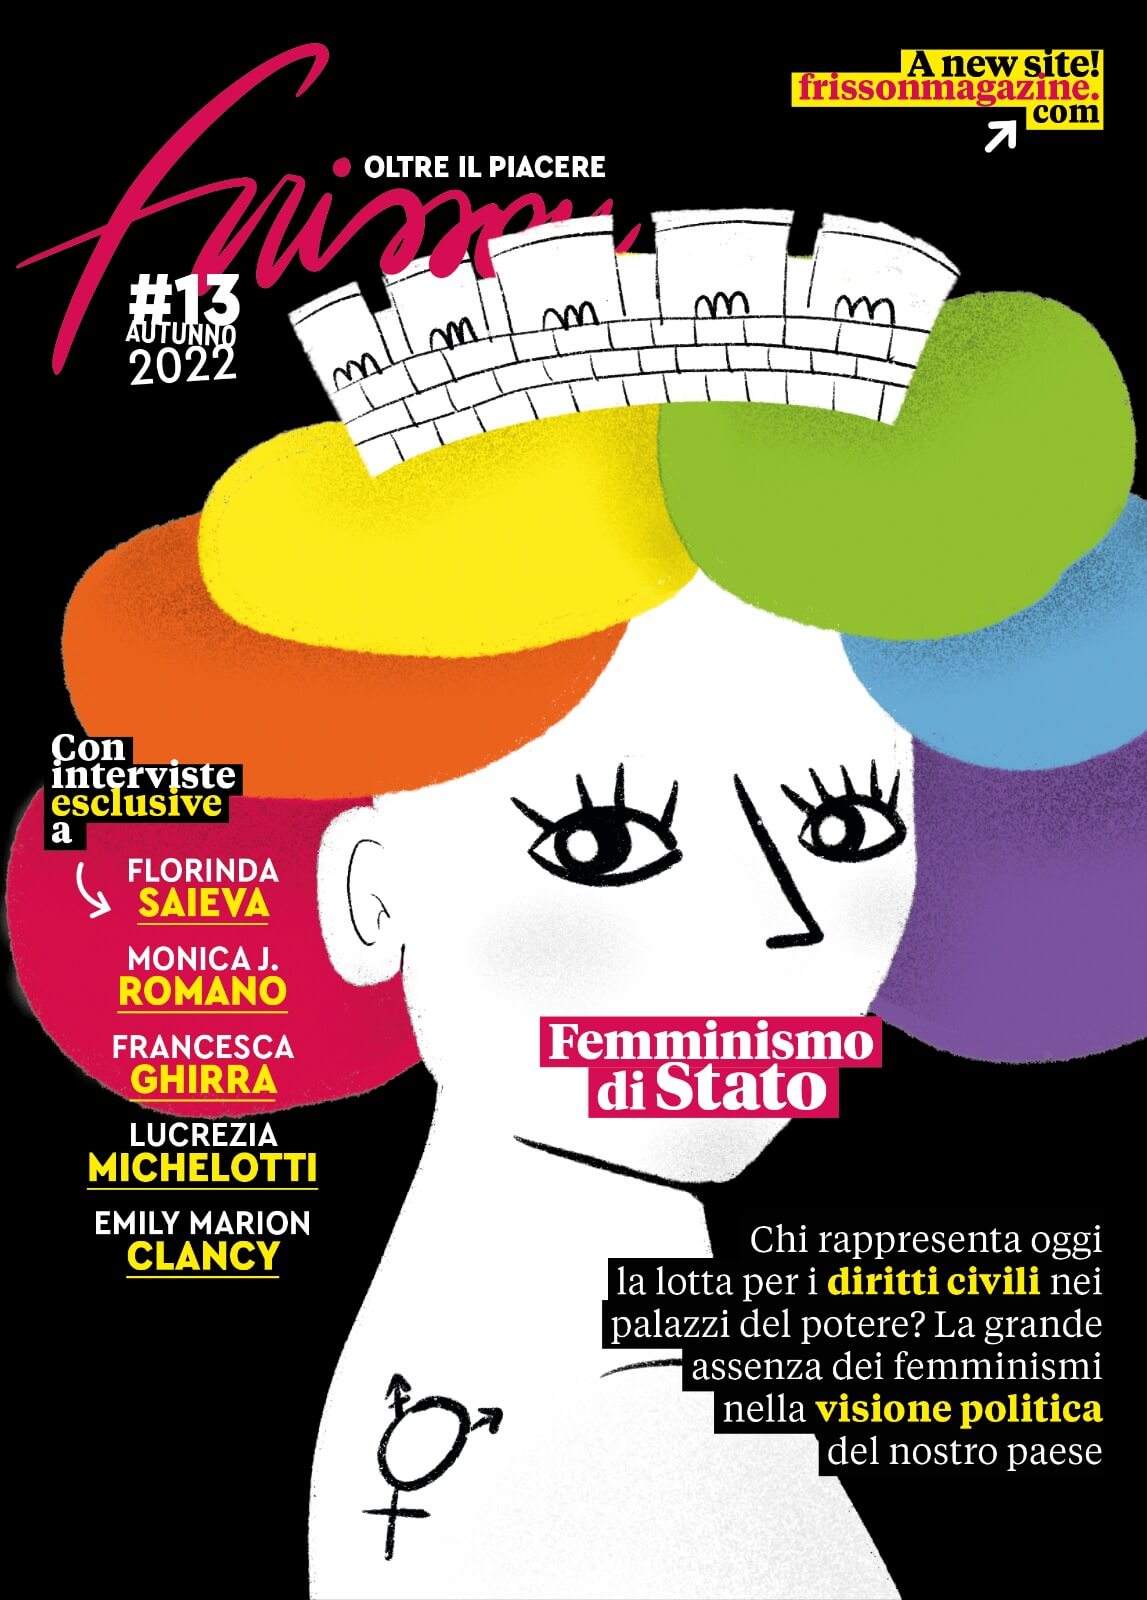 cover di Frisson n.13 con illustrazione dell'italia turrita rainbow